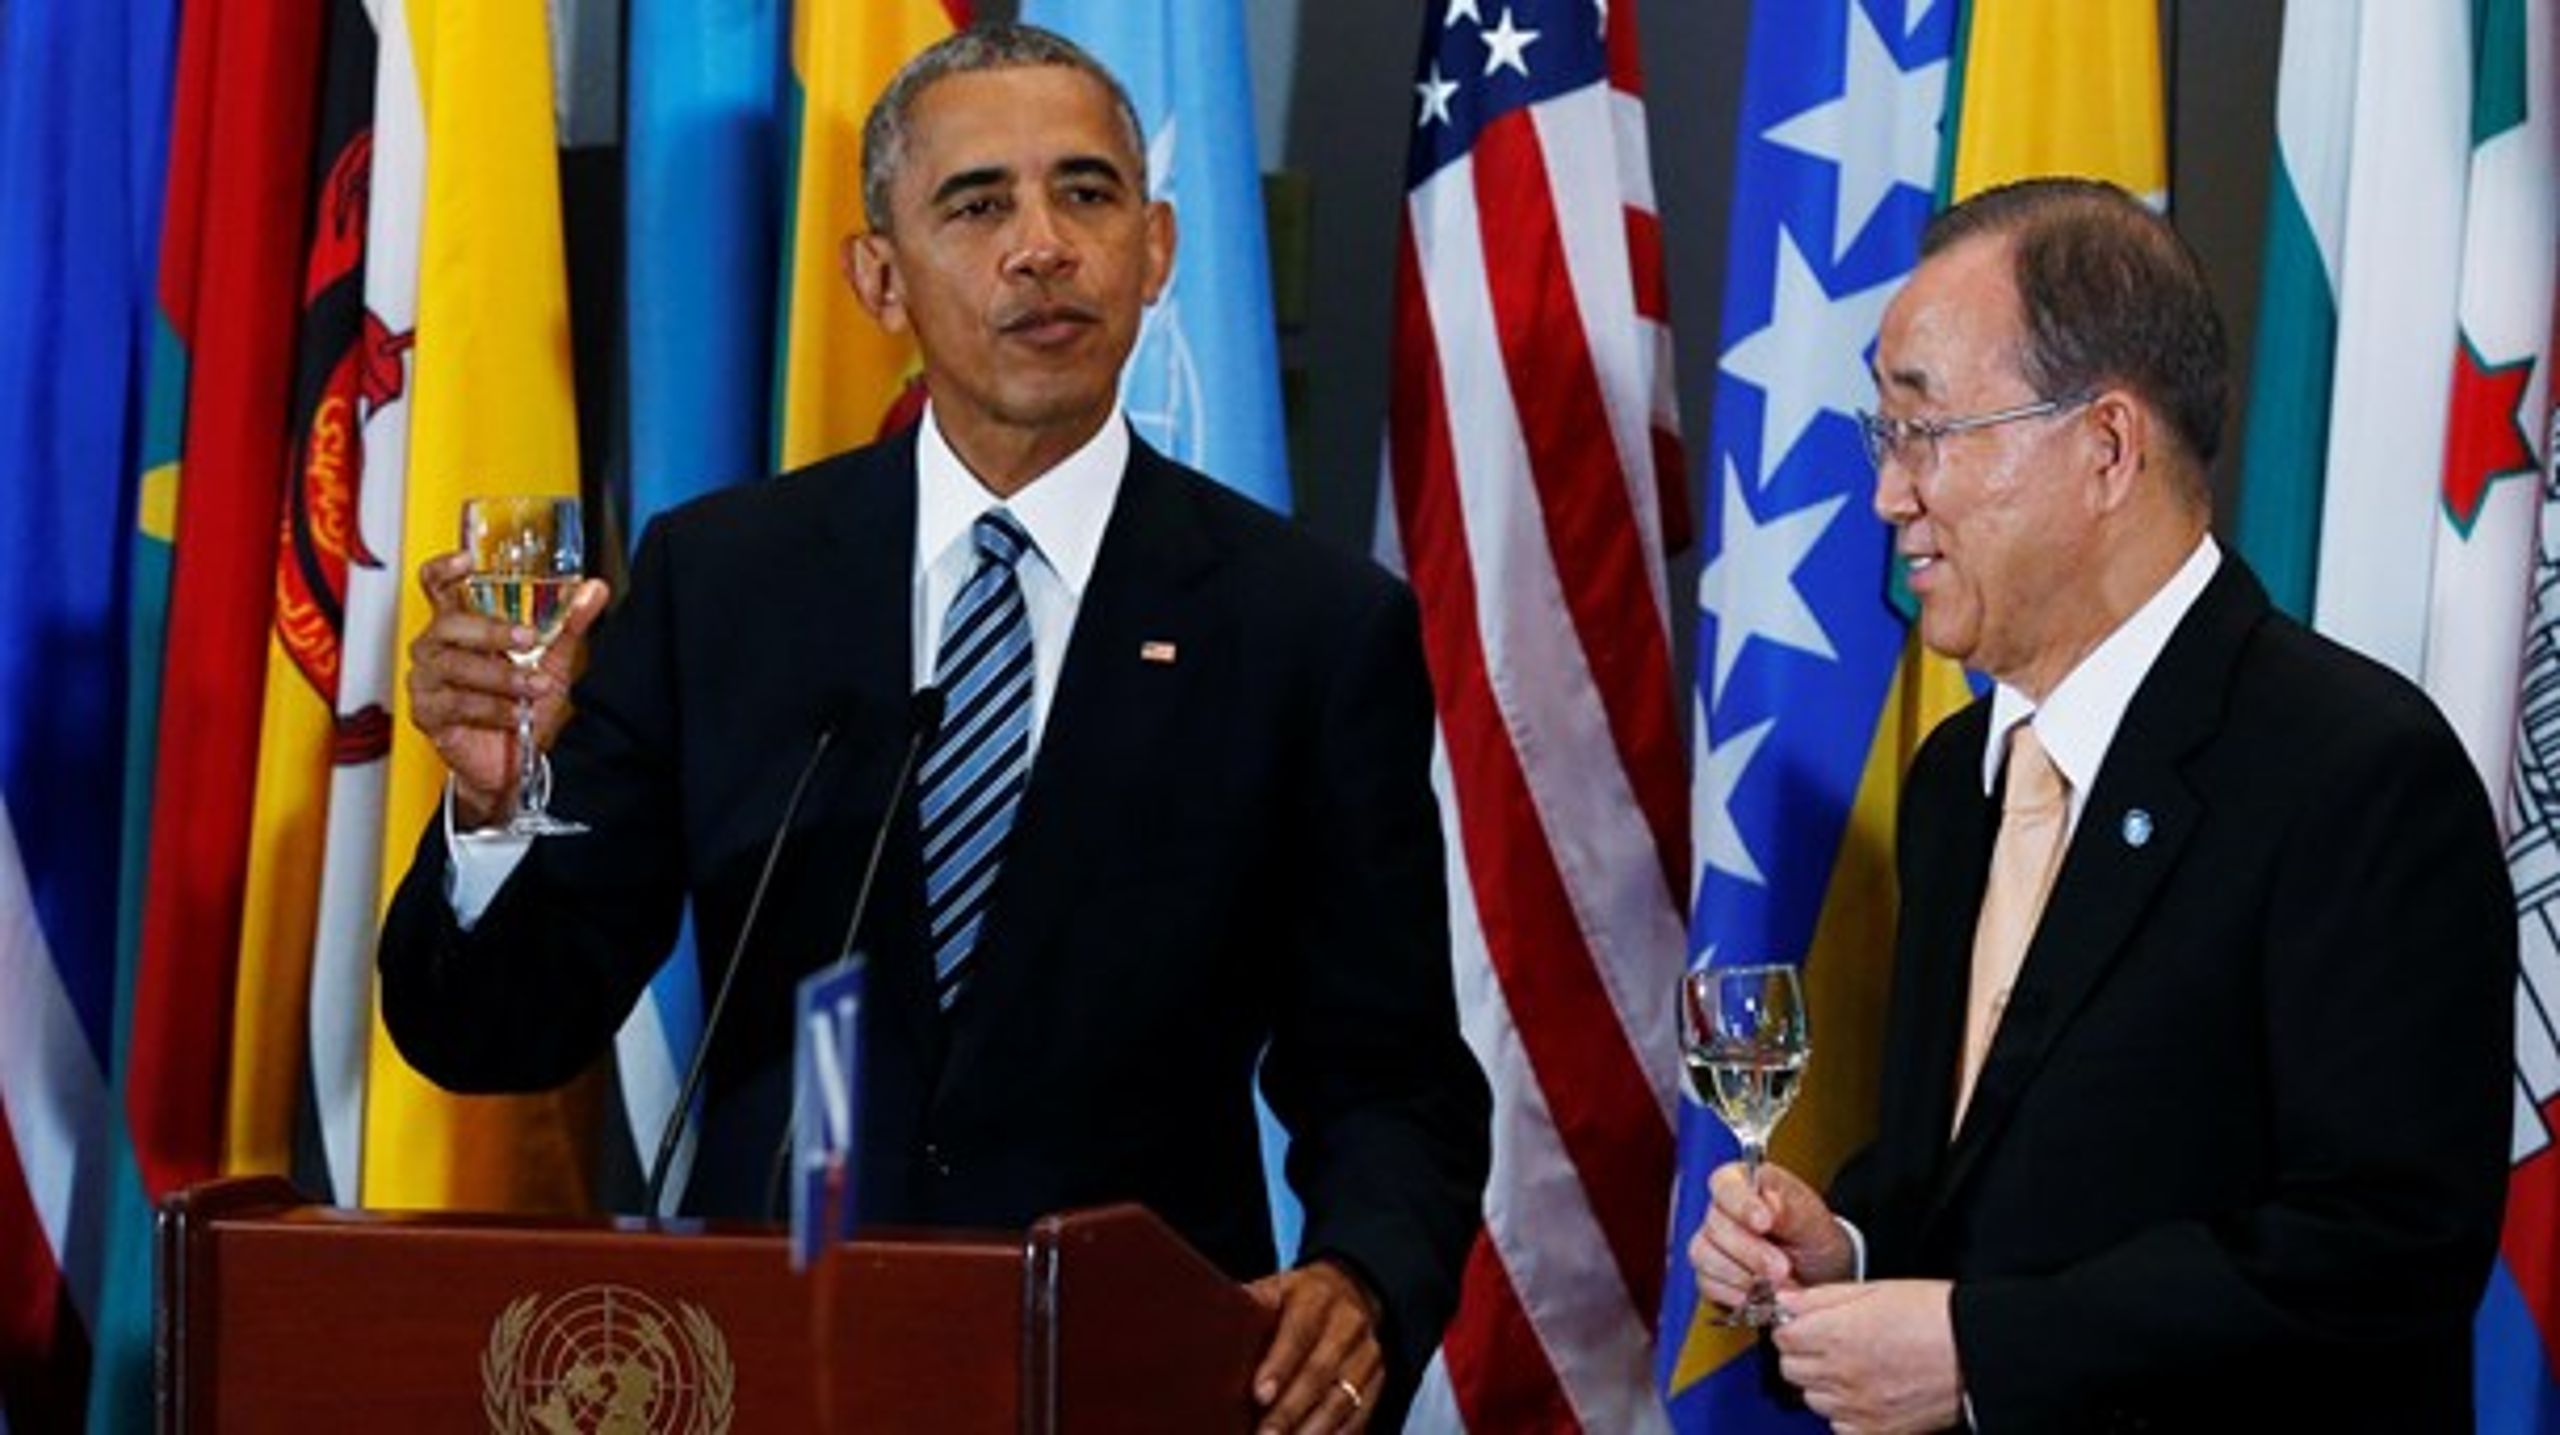 Der bliver både skålet og talt til FN's generalforsamling. Men blandt andre præsident Obama har brugt den årlige lejlighed til at sætte store diplomatiske projekter i søen.